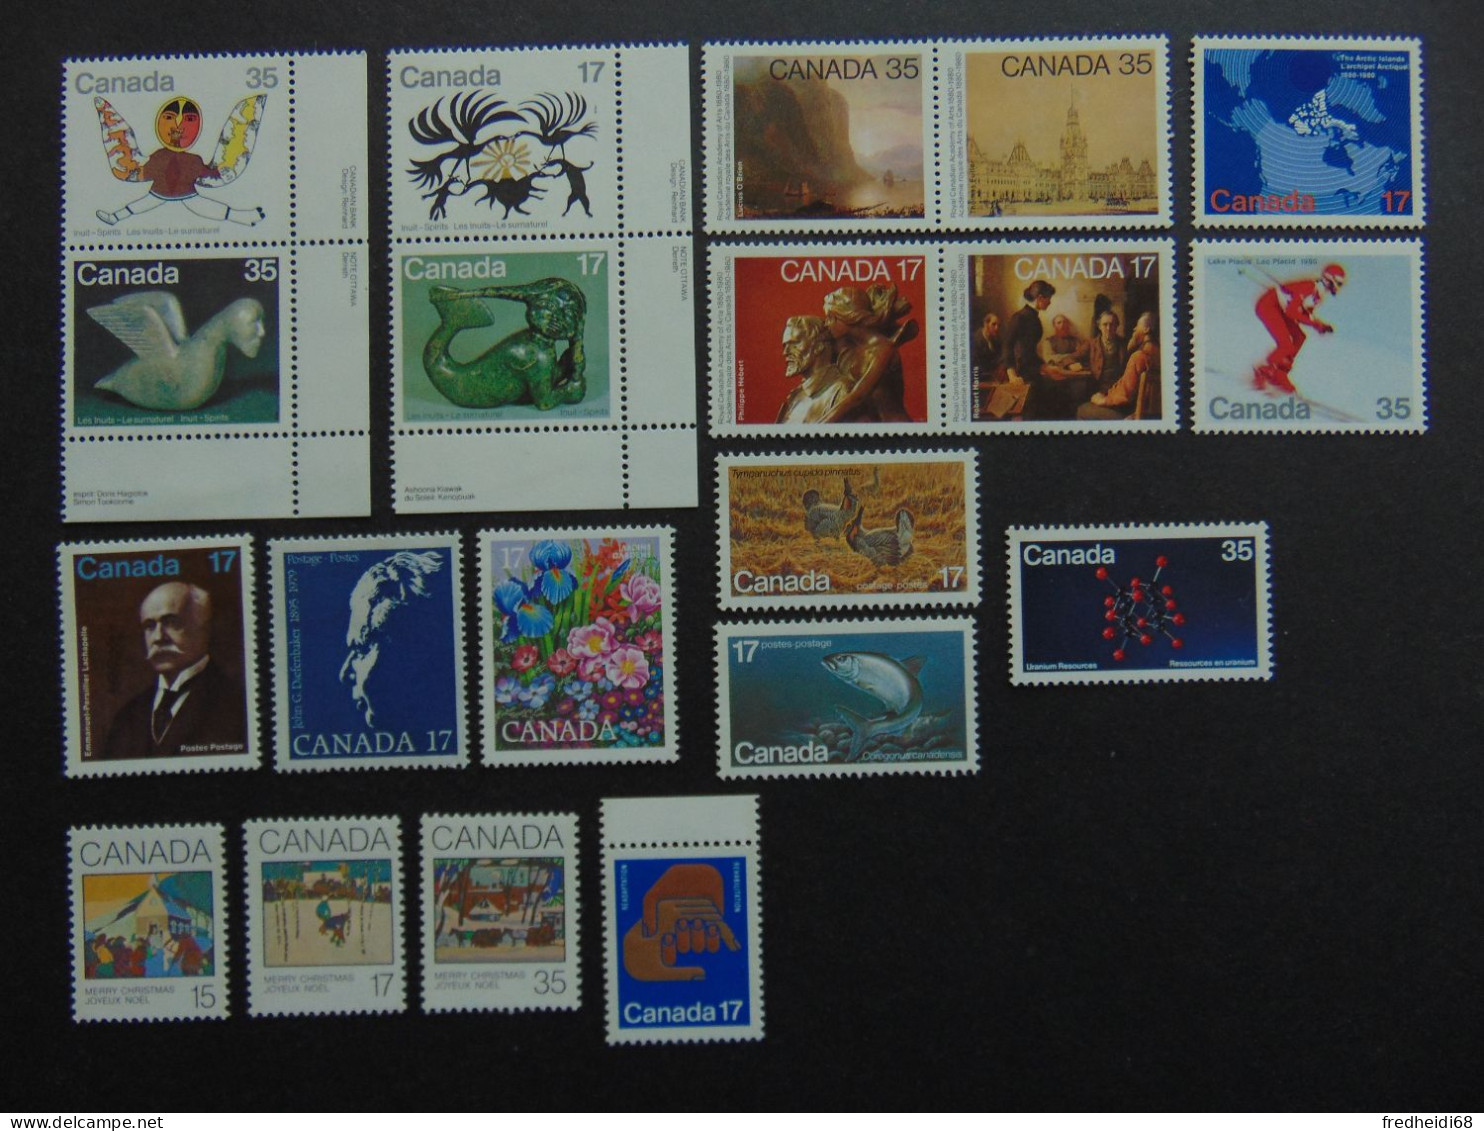 Magnifique Lot De L'année 1980 à Priori Complète En Qualité ** - Unused Stamps